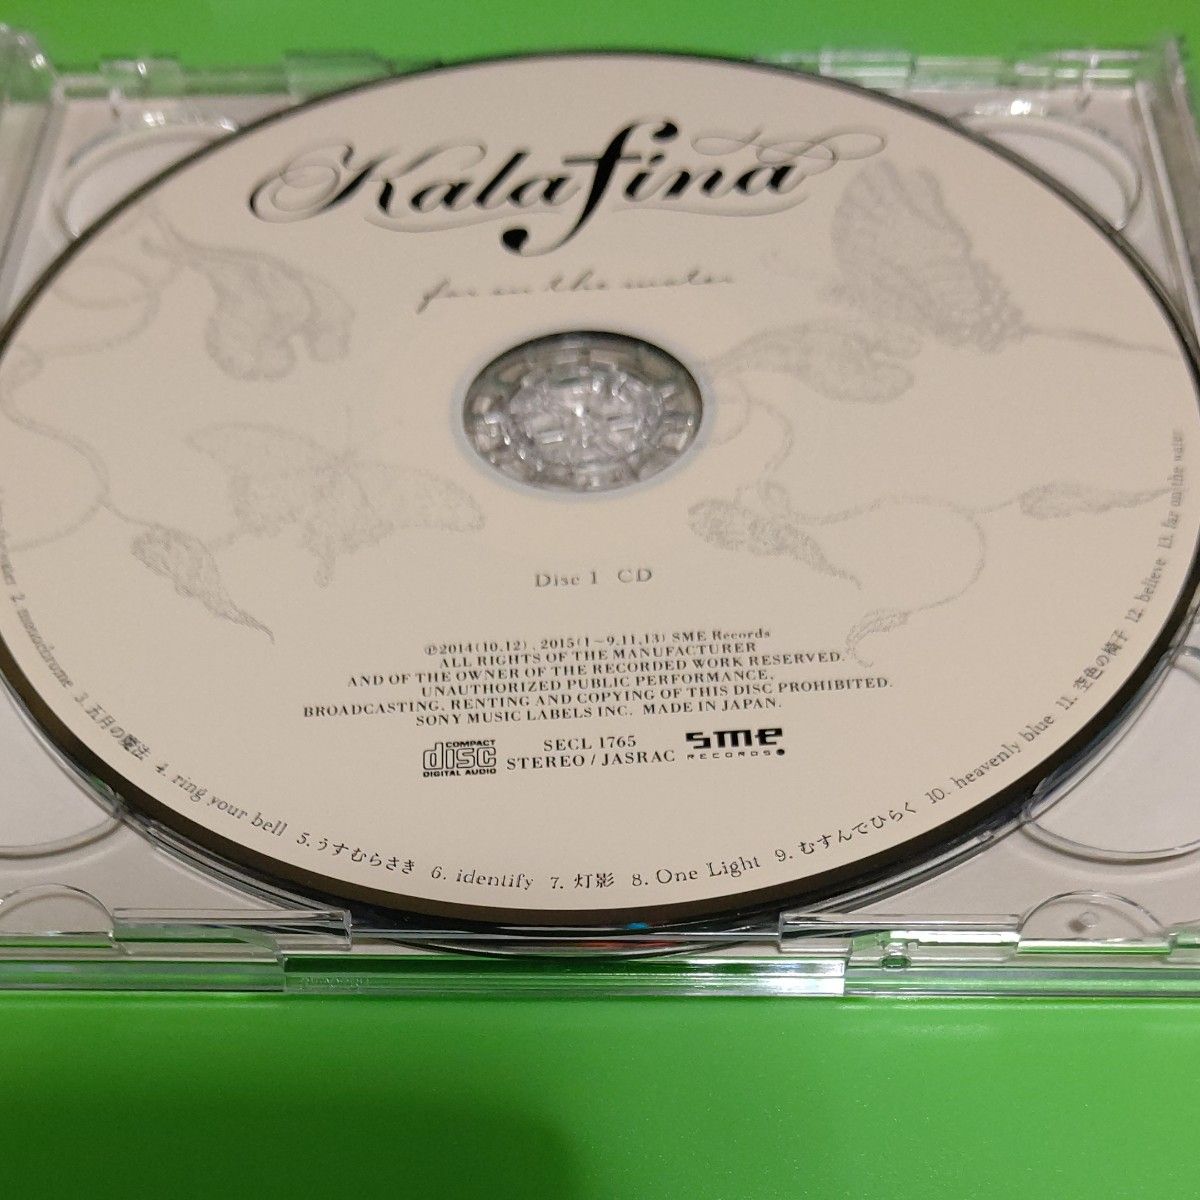 kalafina CDアルバム「far on the water」 初回生産限定盤 Blu-ray付き